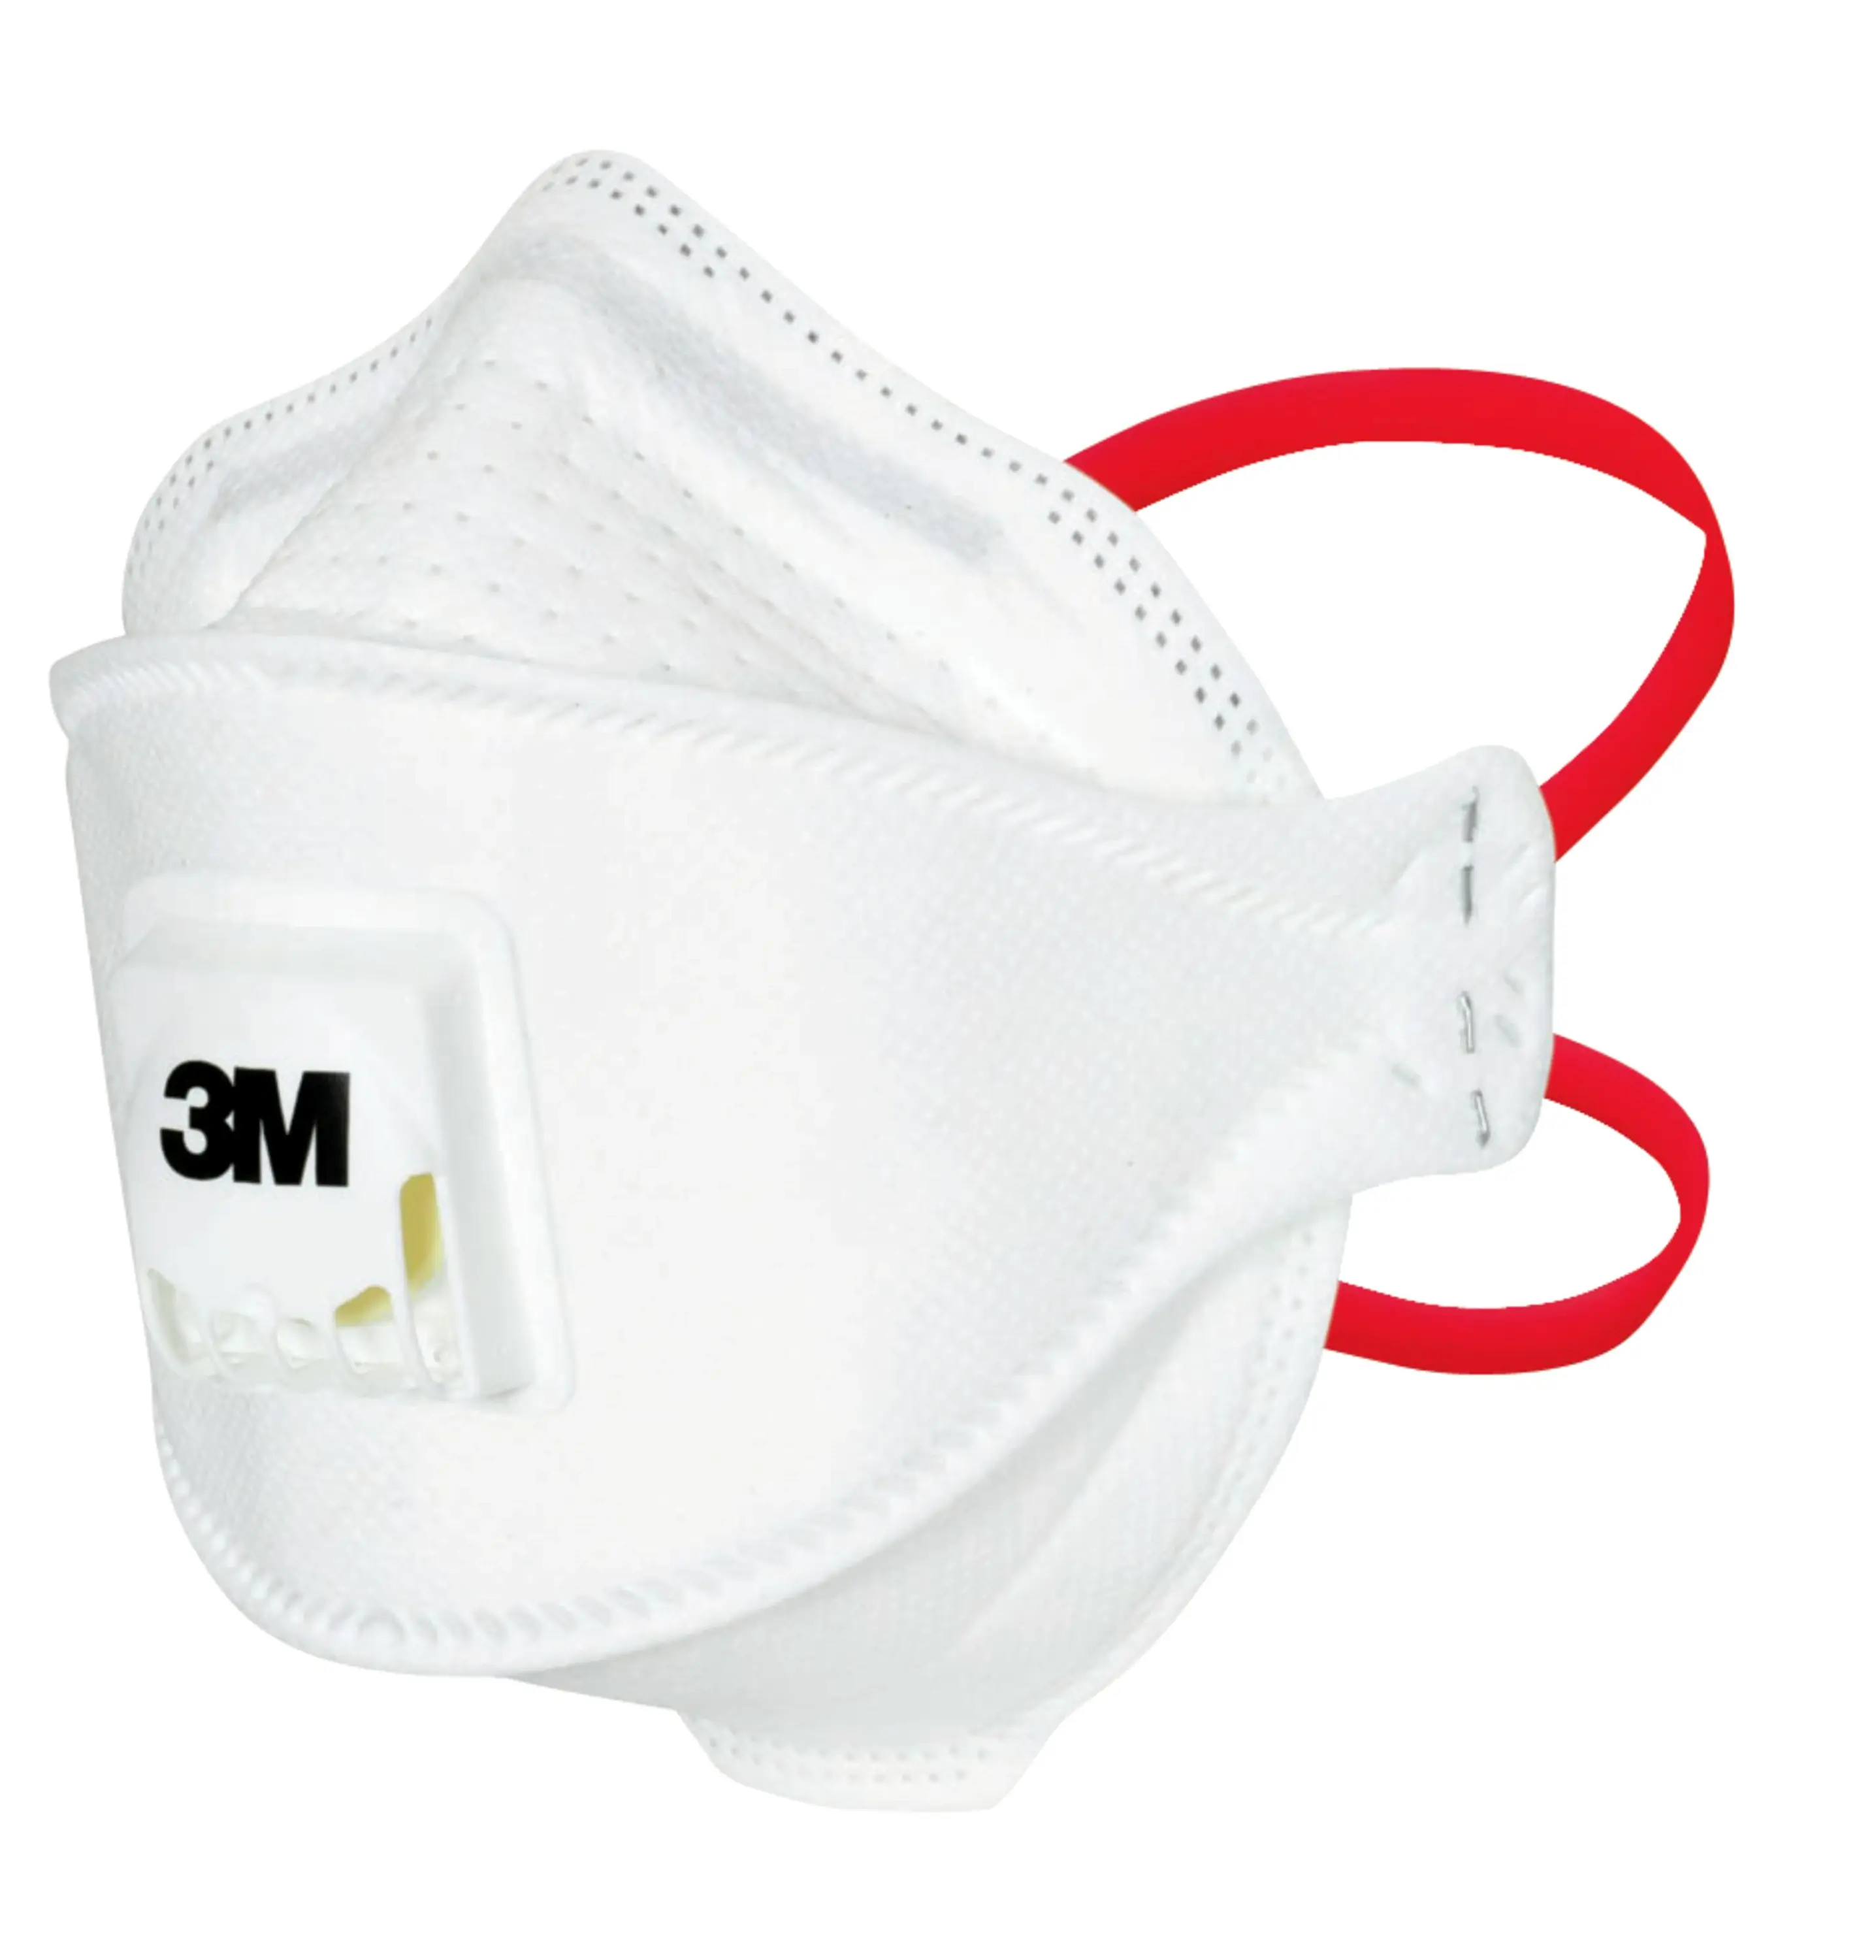 FFP3 masker kopen Voordelige, comfortabele 3M Mondkapjes - Hulpmiddelwereld